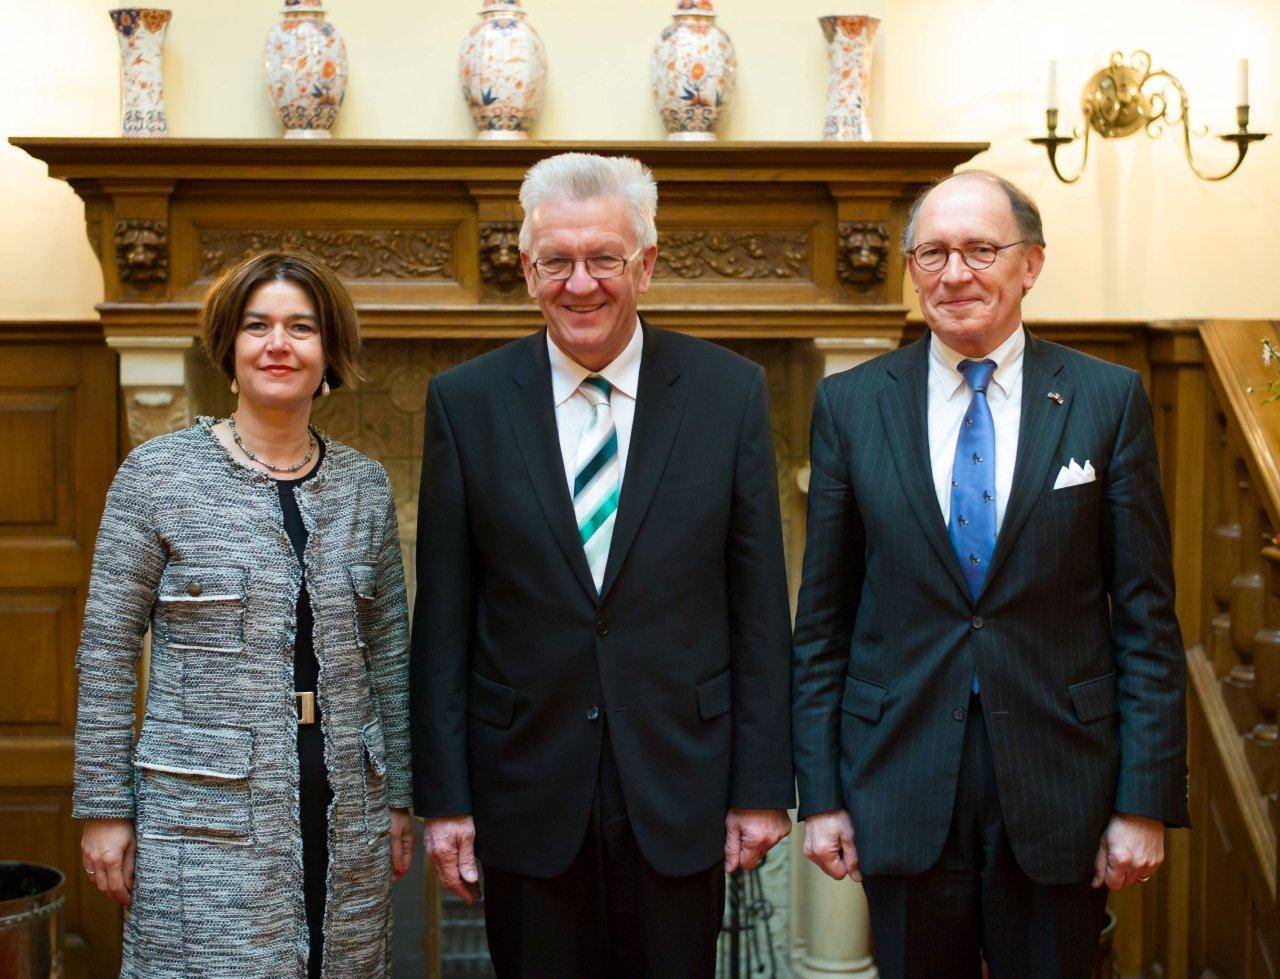 Portretfoto van Voorzitters bij ontvangst Voorzitter Duitse Bondsraad 